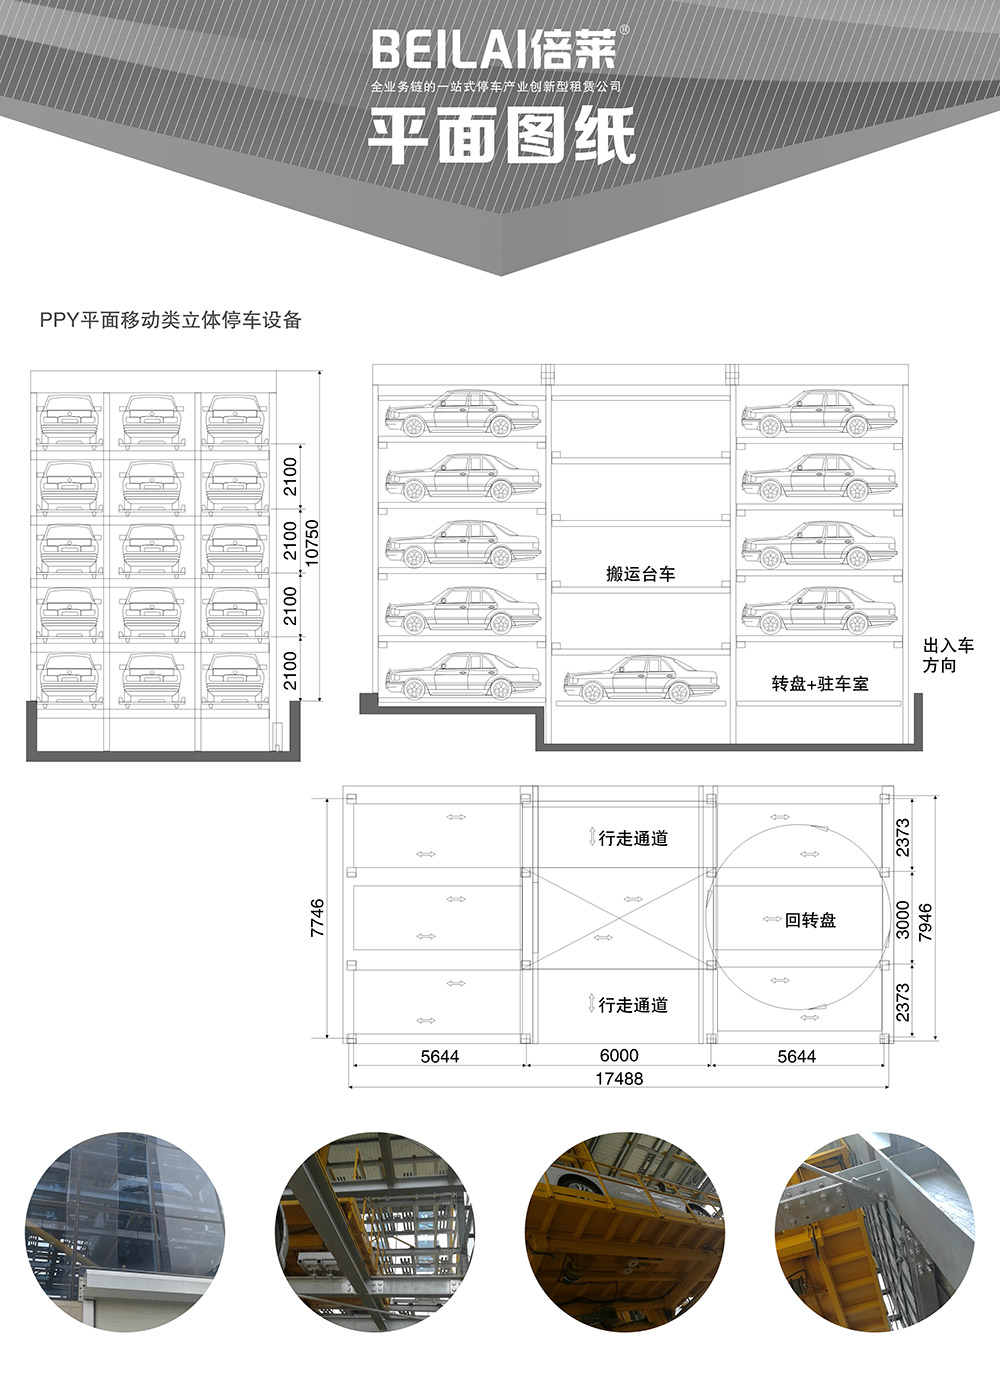 贵州贵阳平面移动立体停车设备平面图纸.jpg